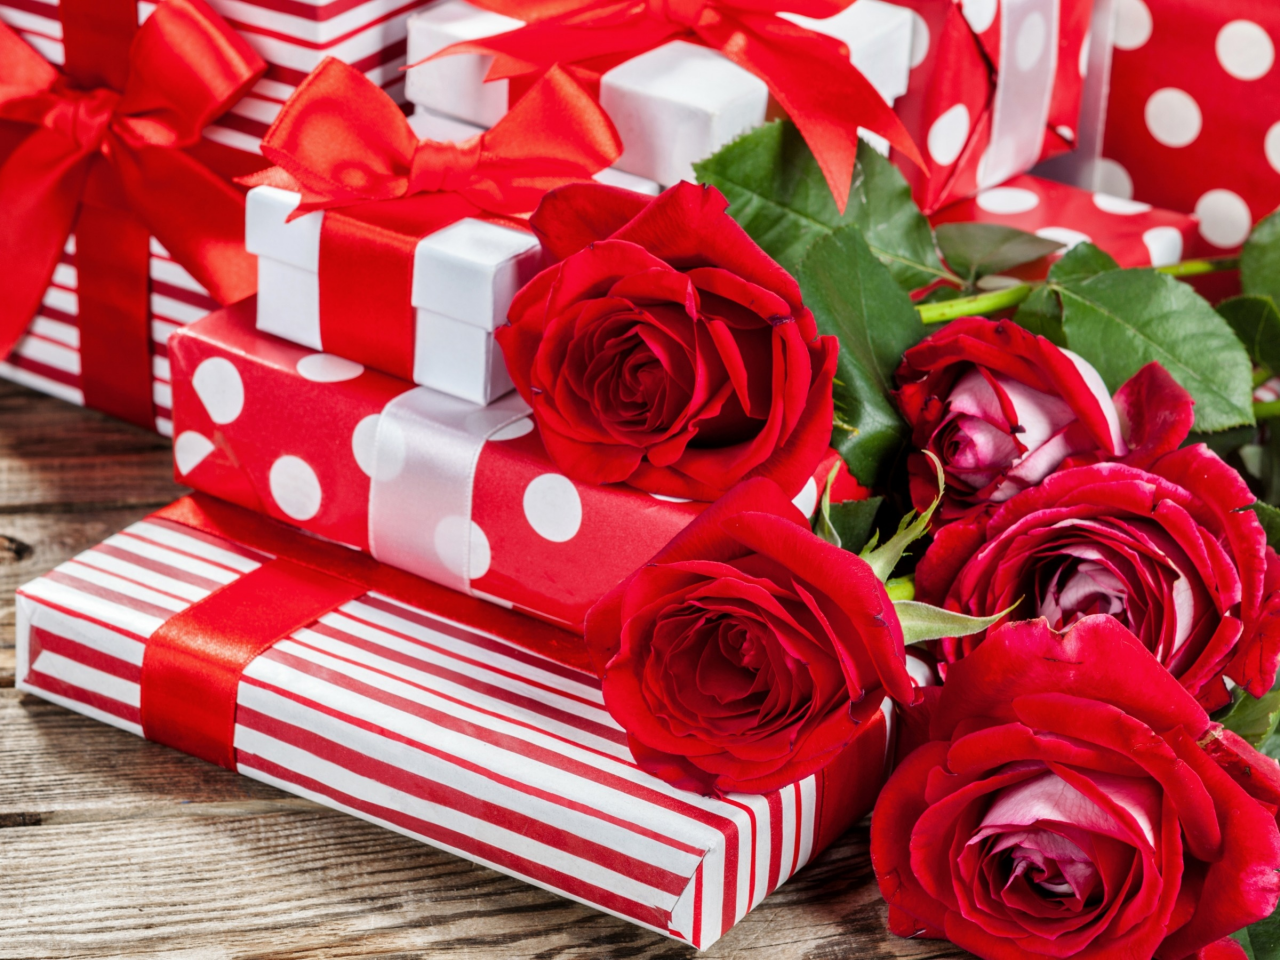 alentines ay, ose, gift, box, подарки, розы, красные, коробки, подарки, бант